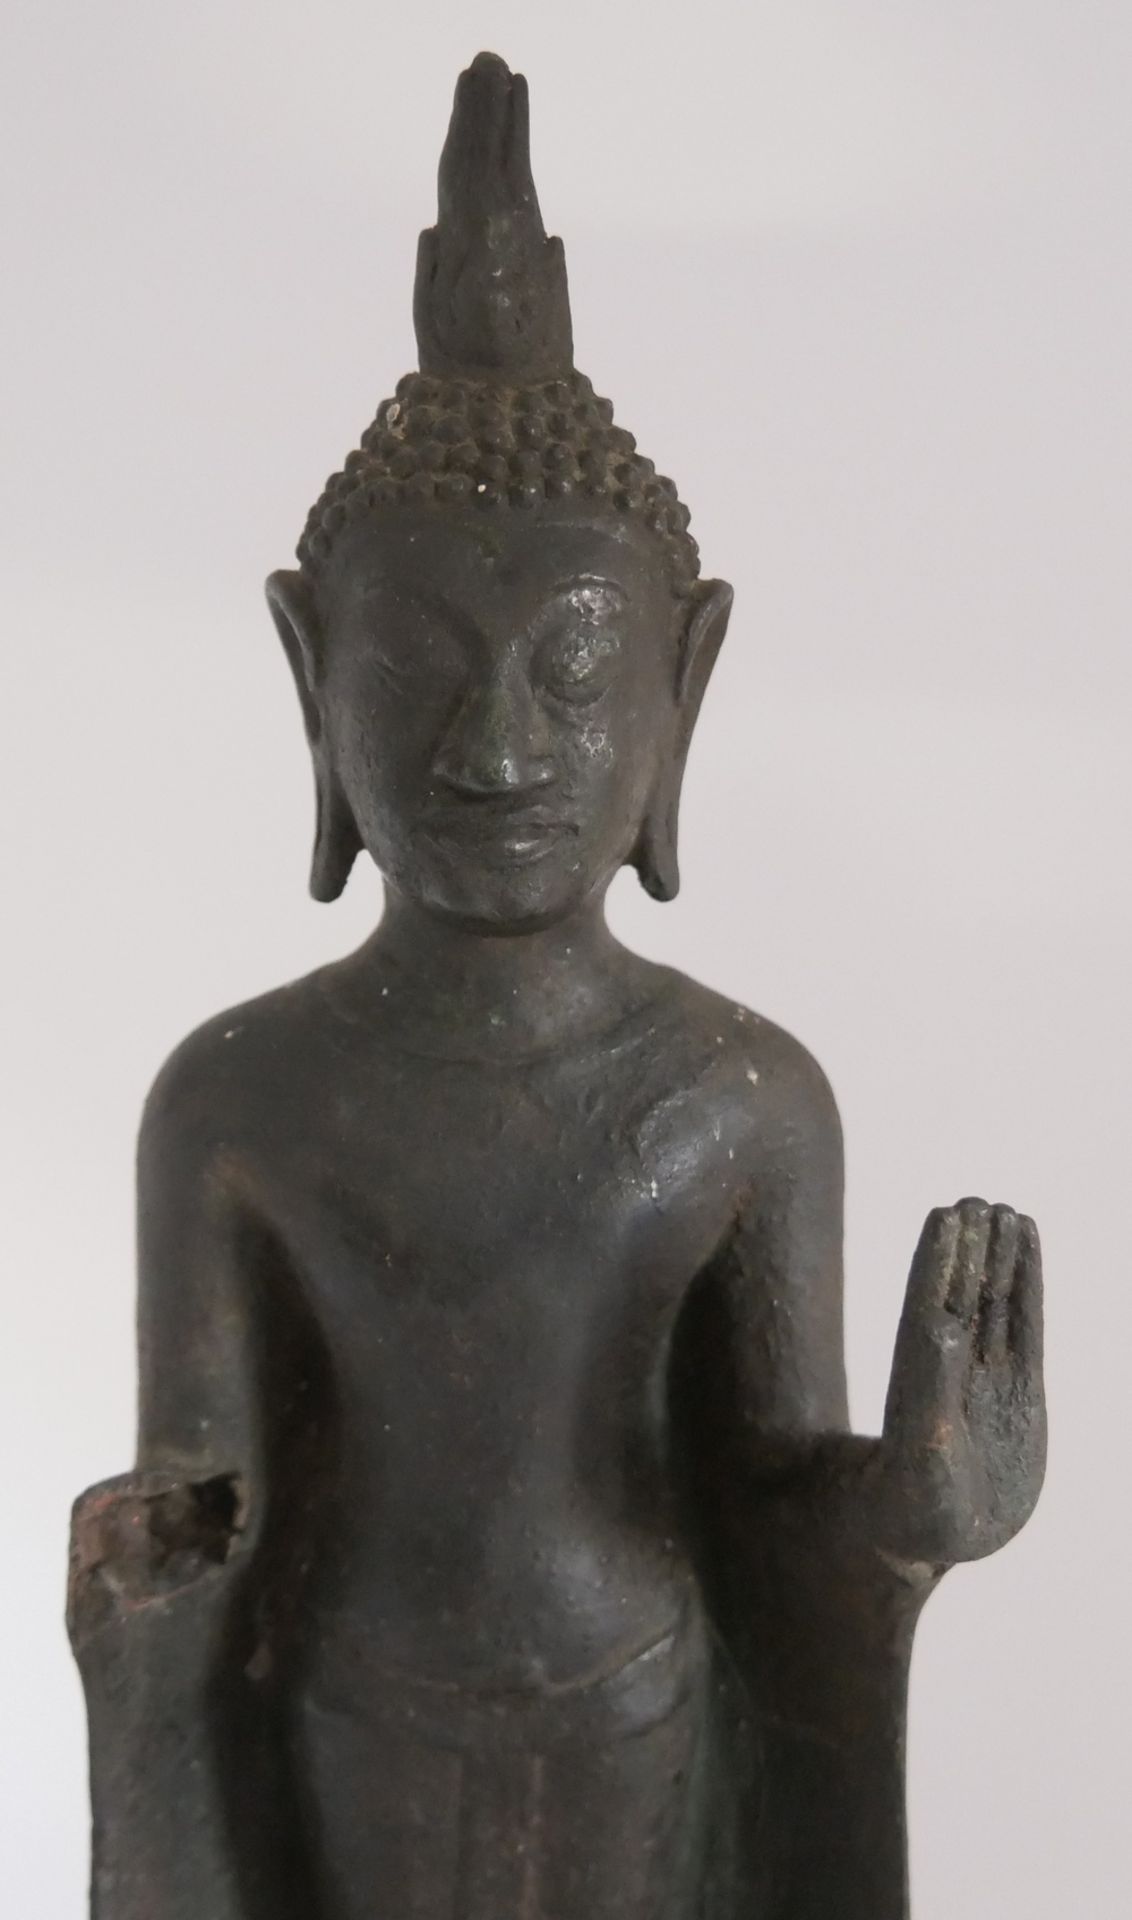 Stehender Abhaya Schutz Buddha Statue, 1 Arm fehlt. Wohl Thailand auf Holzsockel. Höhe ca. 24 cm. - Bild 3 aus 4